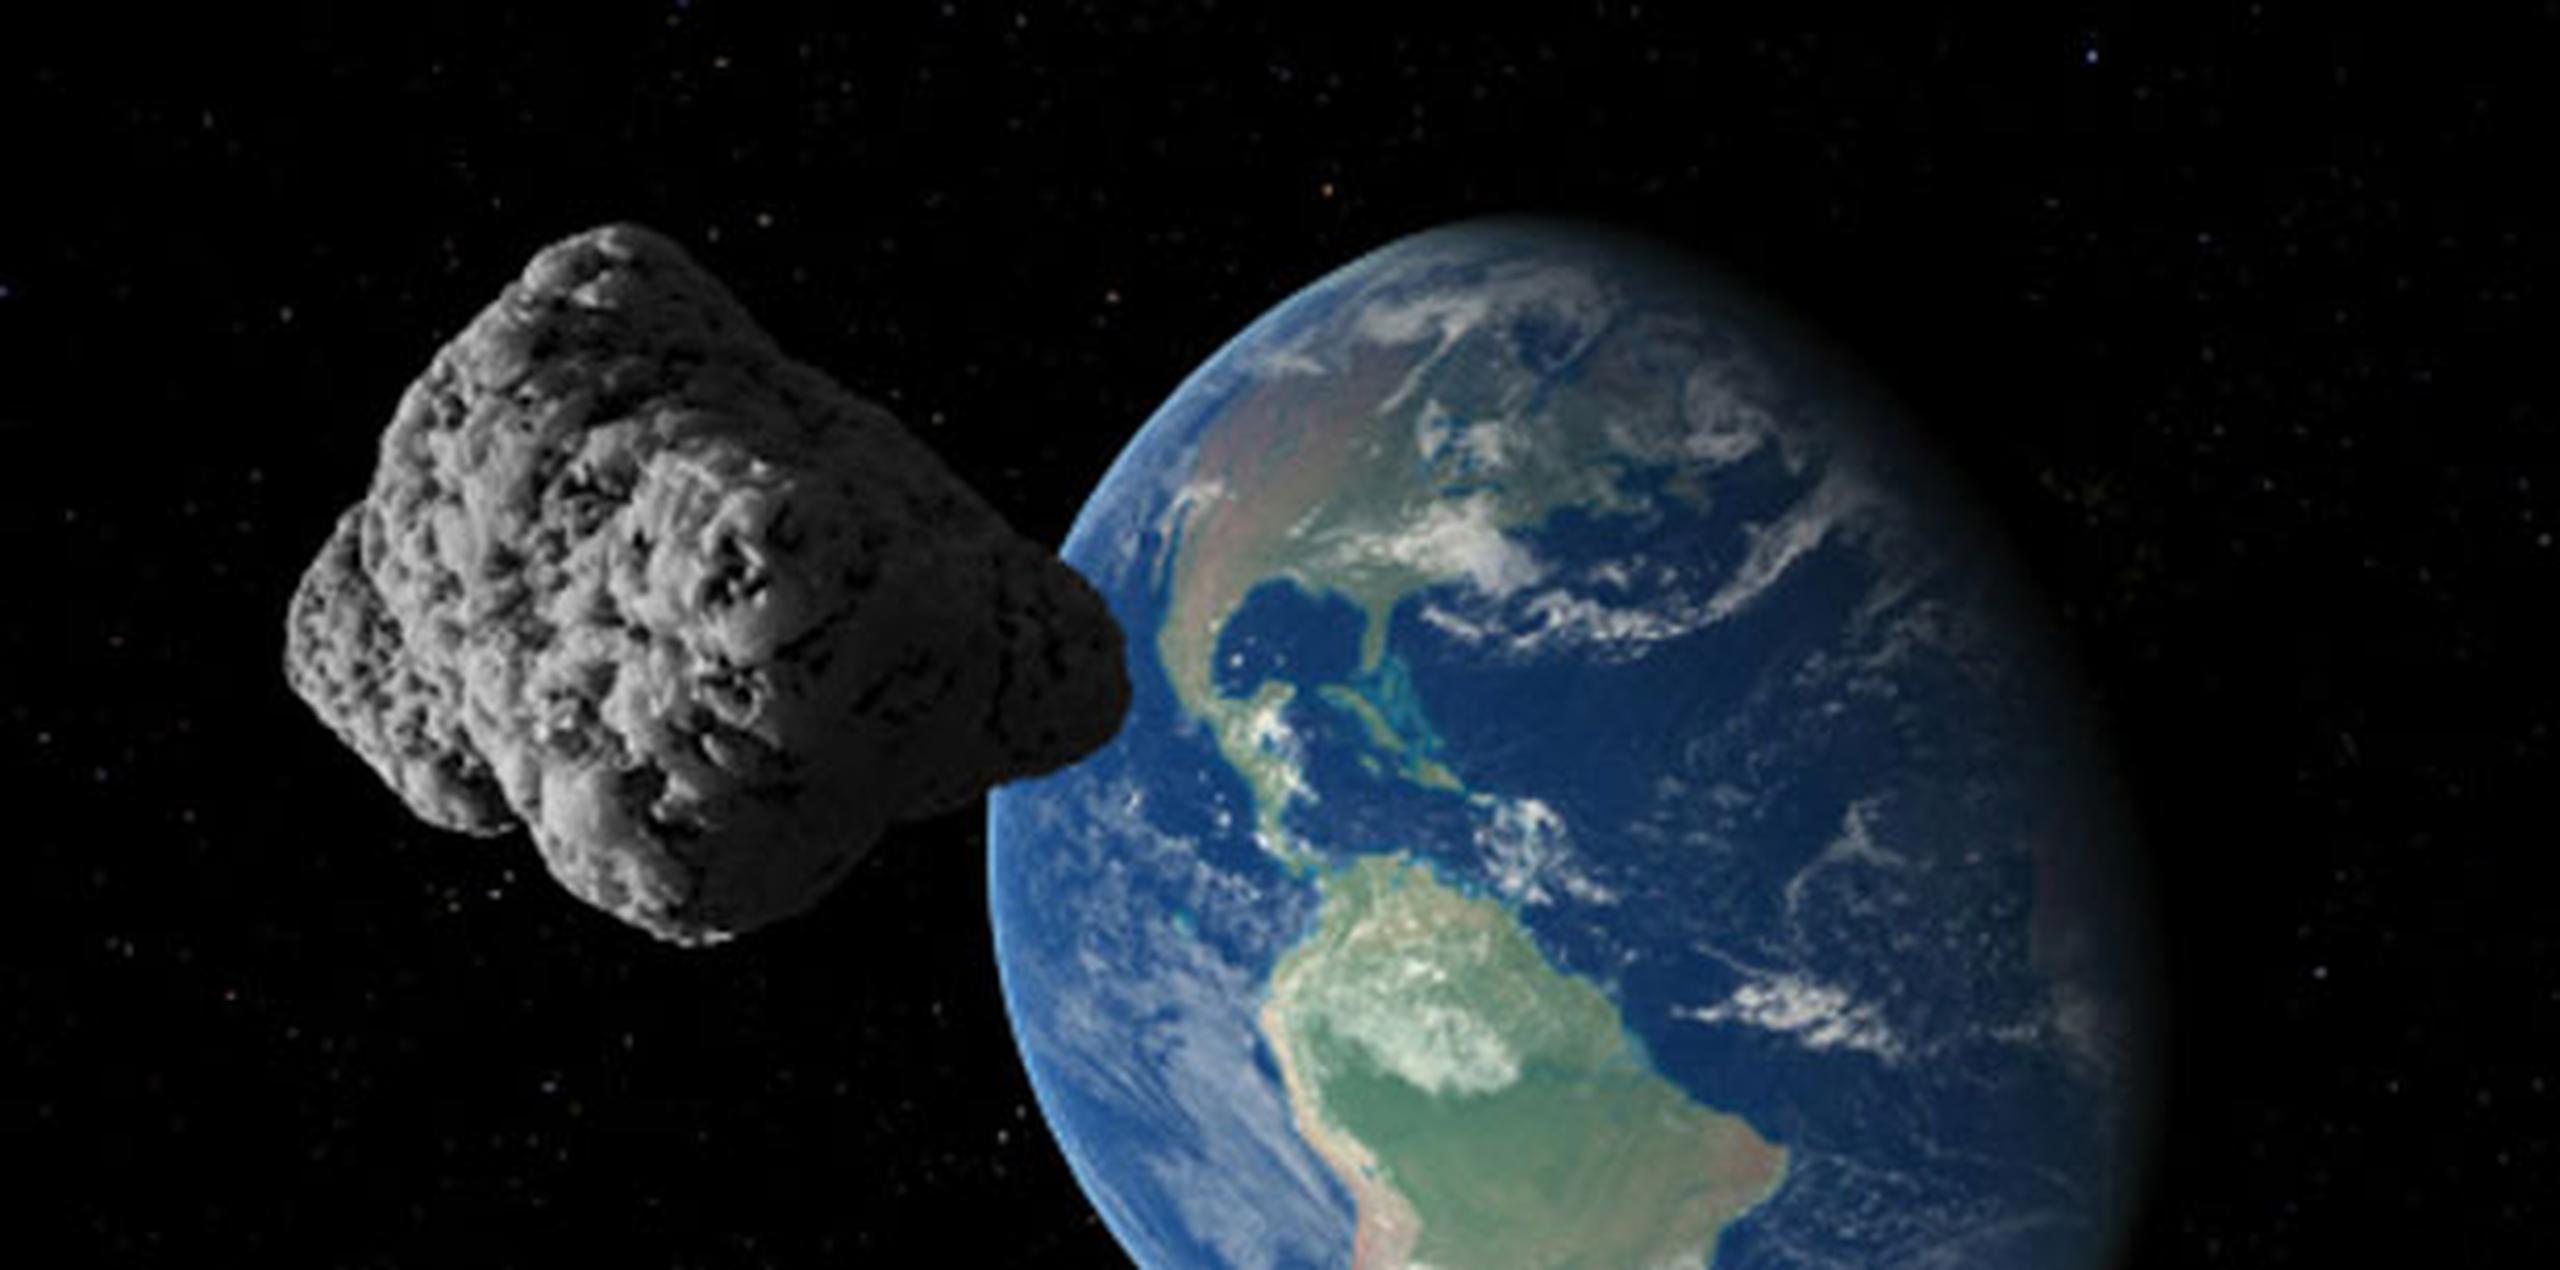 Hasta el presente, no existe ningún asteroide peligroso cuya trayectoria represente riesgo de impacto a nuestro planeta, indicó la SAC. (Concepto artístico)